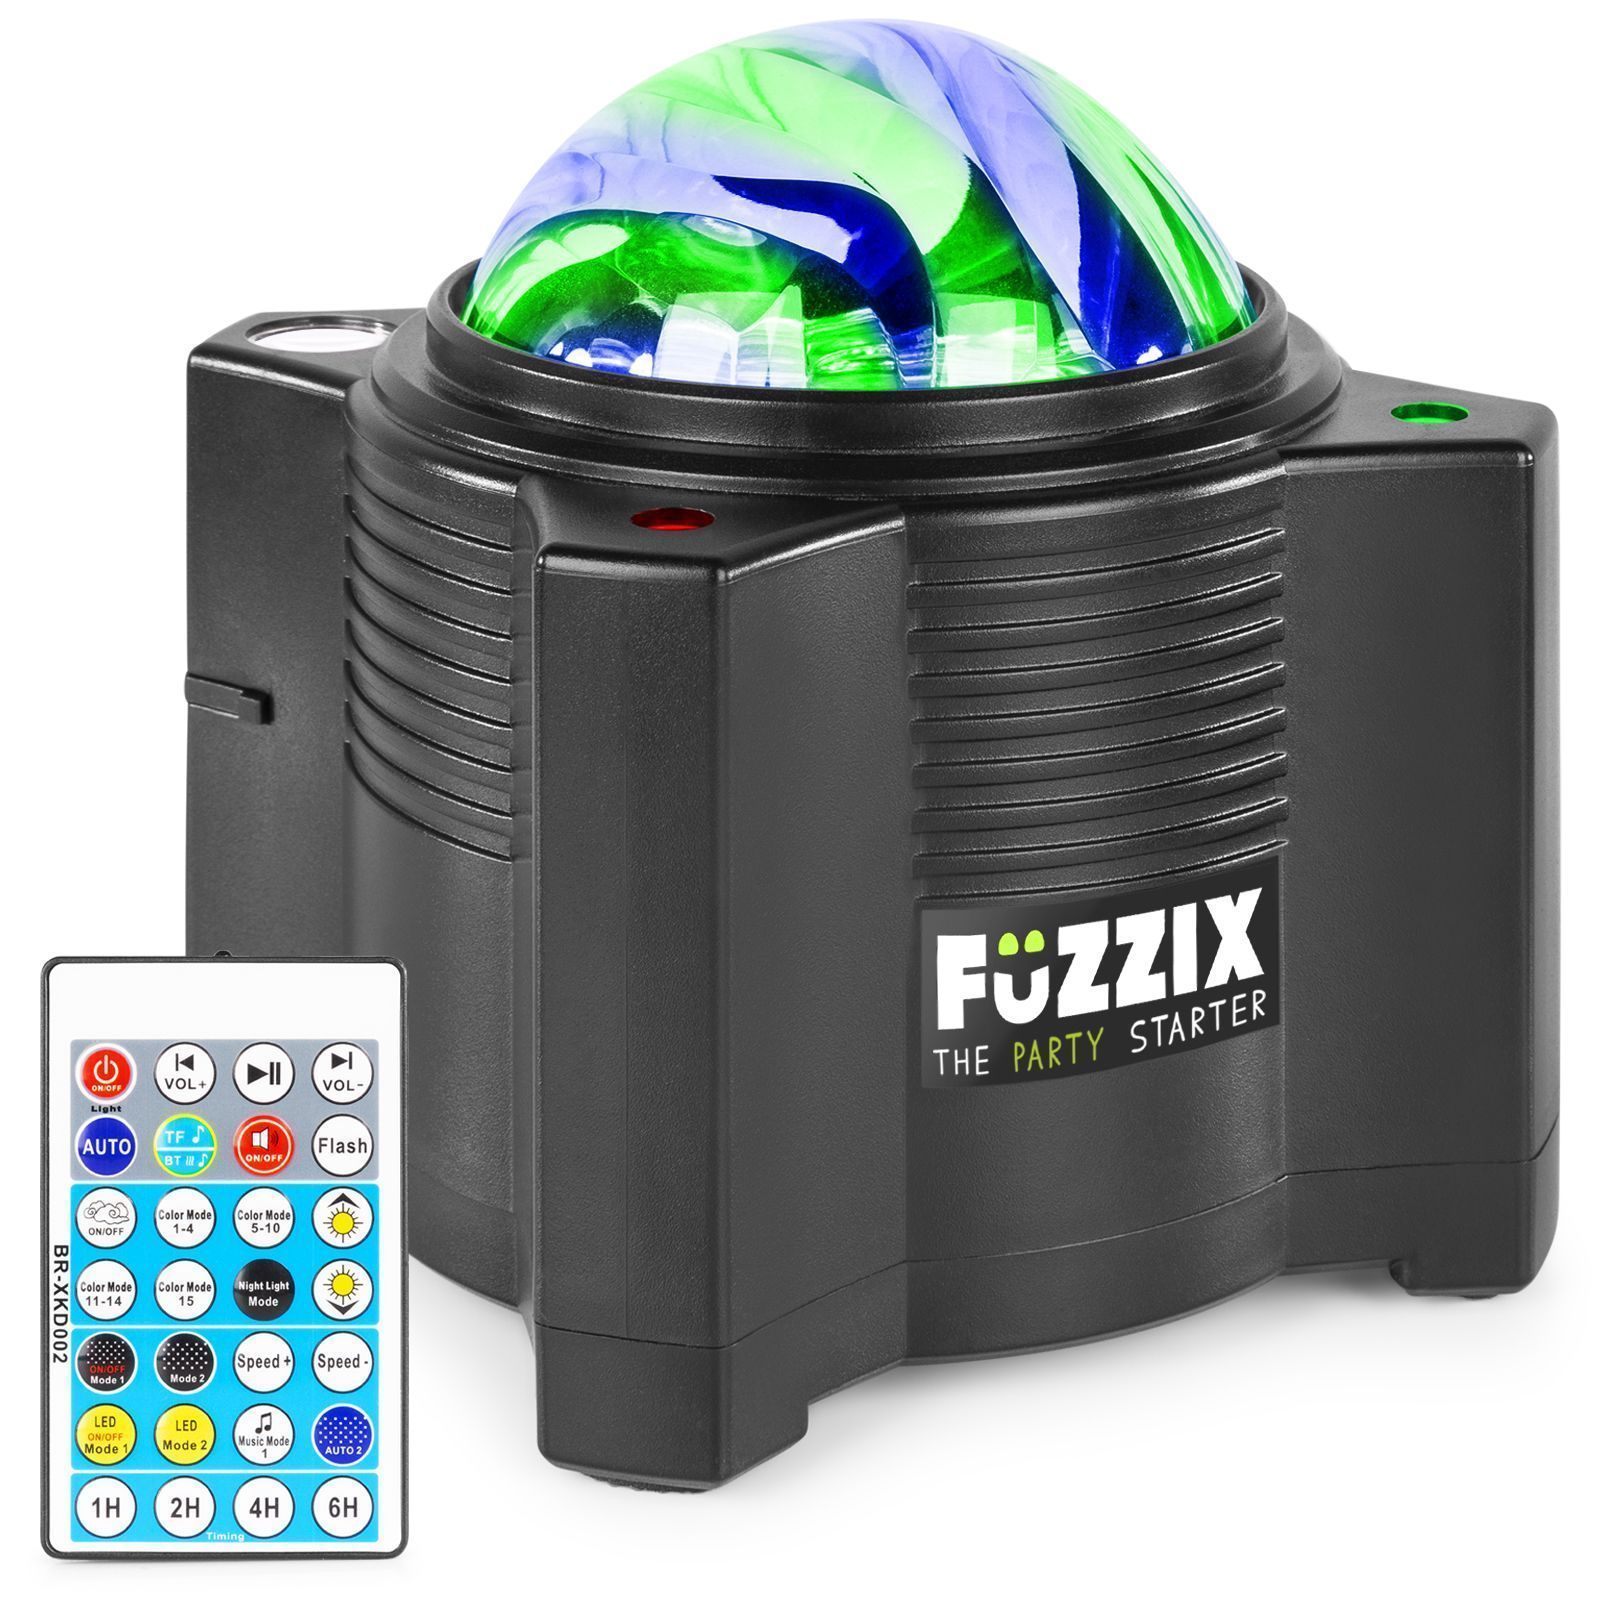 Fuzzix AurorA galaxprojektor - Batteri stjärnhimmelprojektor med lysdioder, lasrar och Bluetooth-högtalare